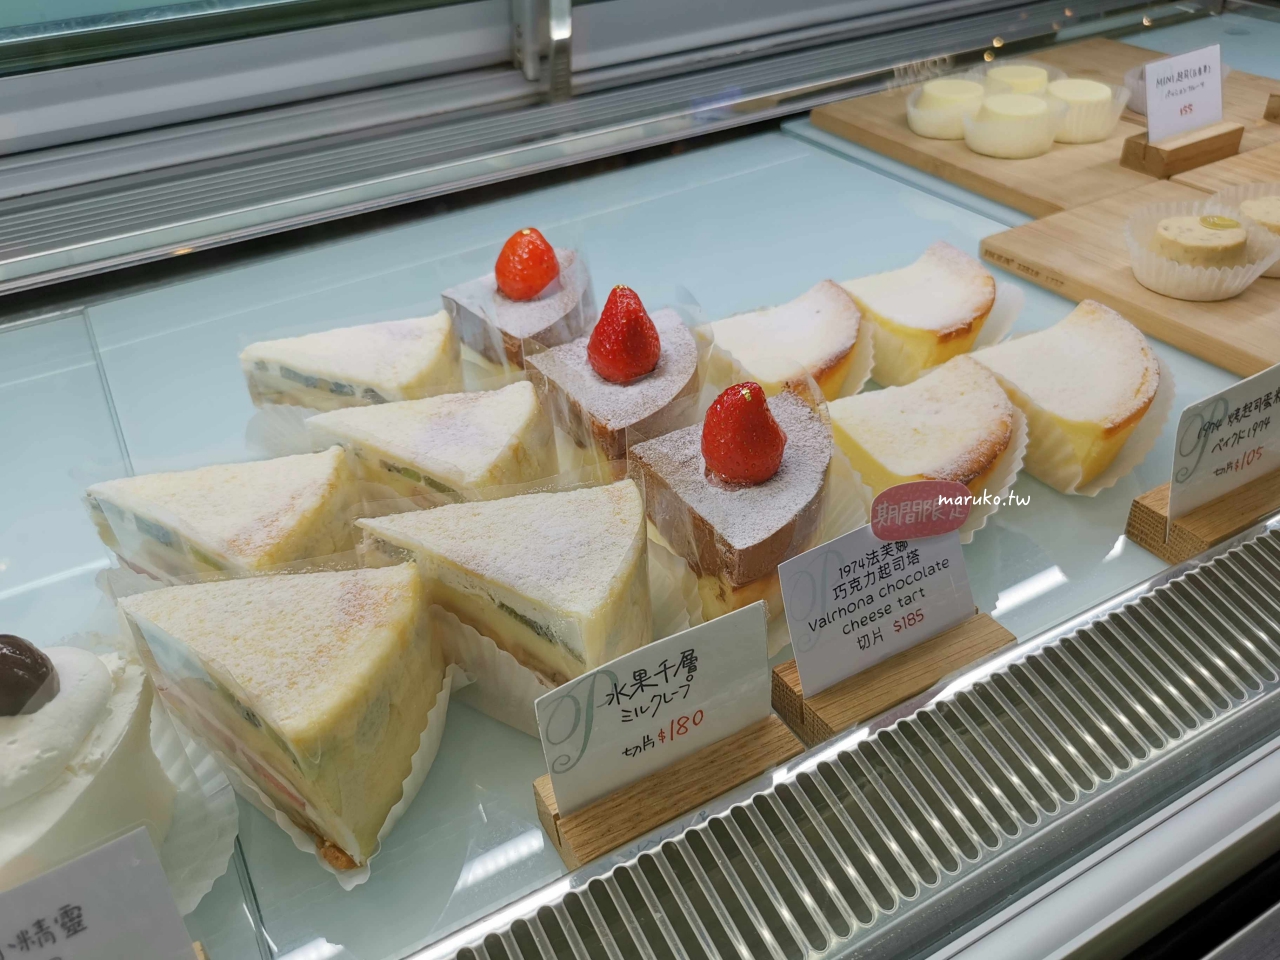 【台北】PINEDE 彼內朵蛋糕 來自名古屋法式甜點店，輕盈起司蛋糕、餅乾泡芙！ @Maruko與美食有個約會